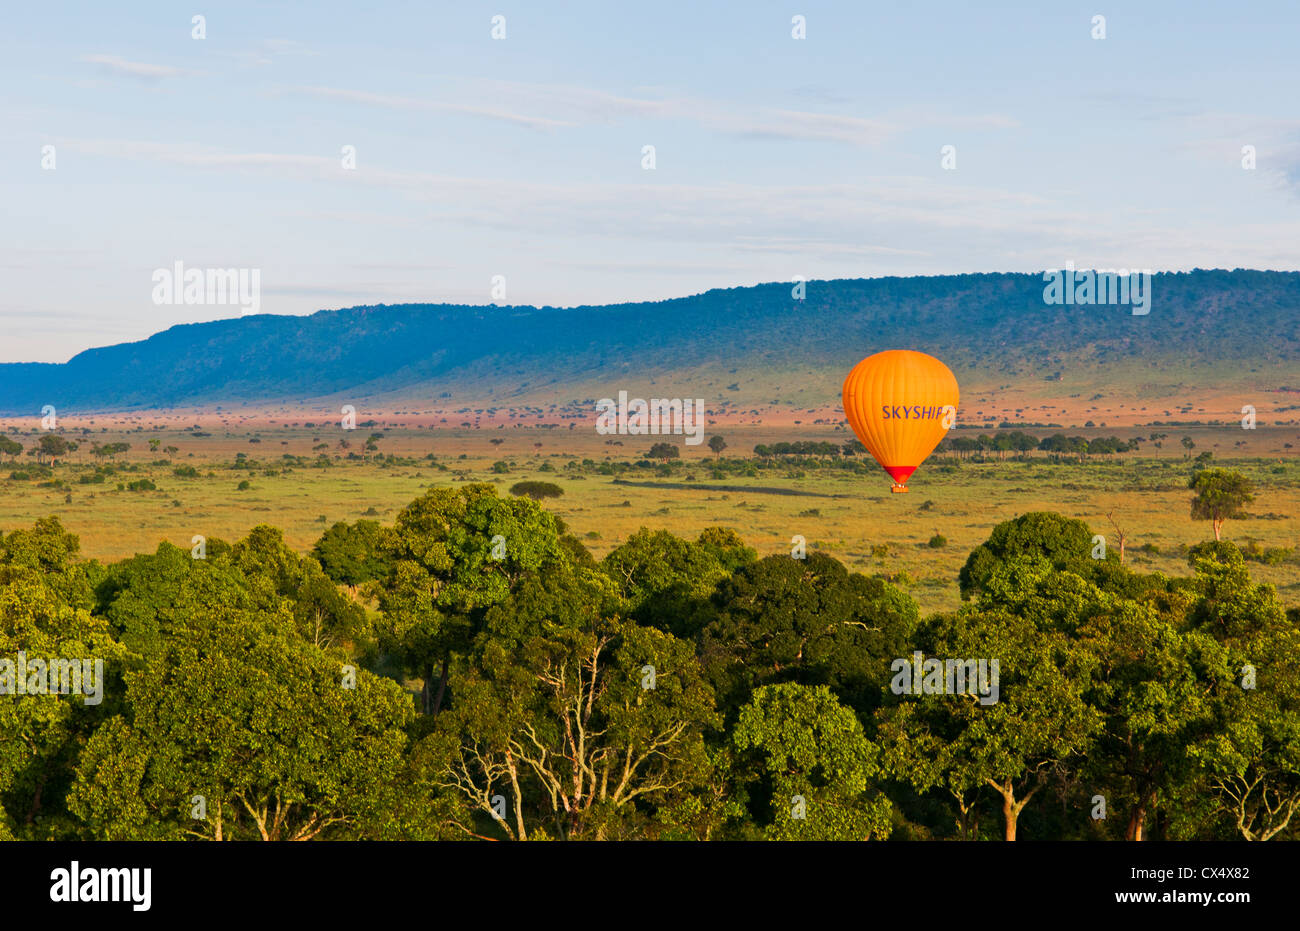 Kenya Masai Mara Africa hot air ballooning over the Masai Mara National Park at sunrise from above Stock Photo